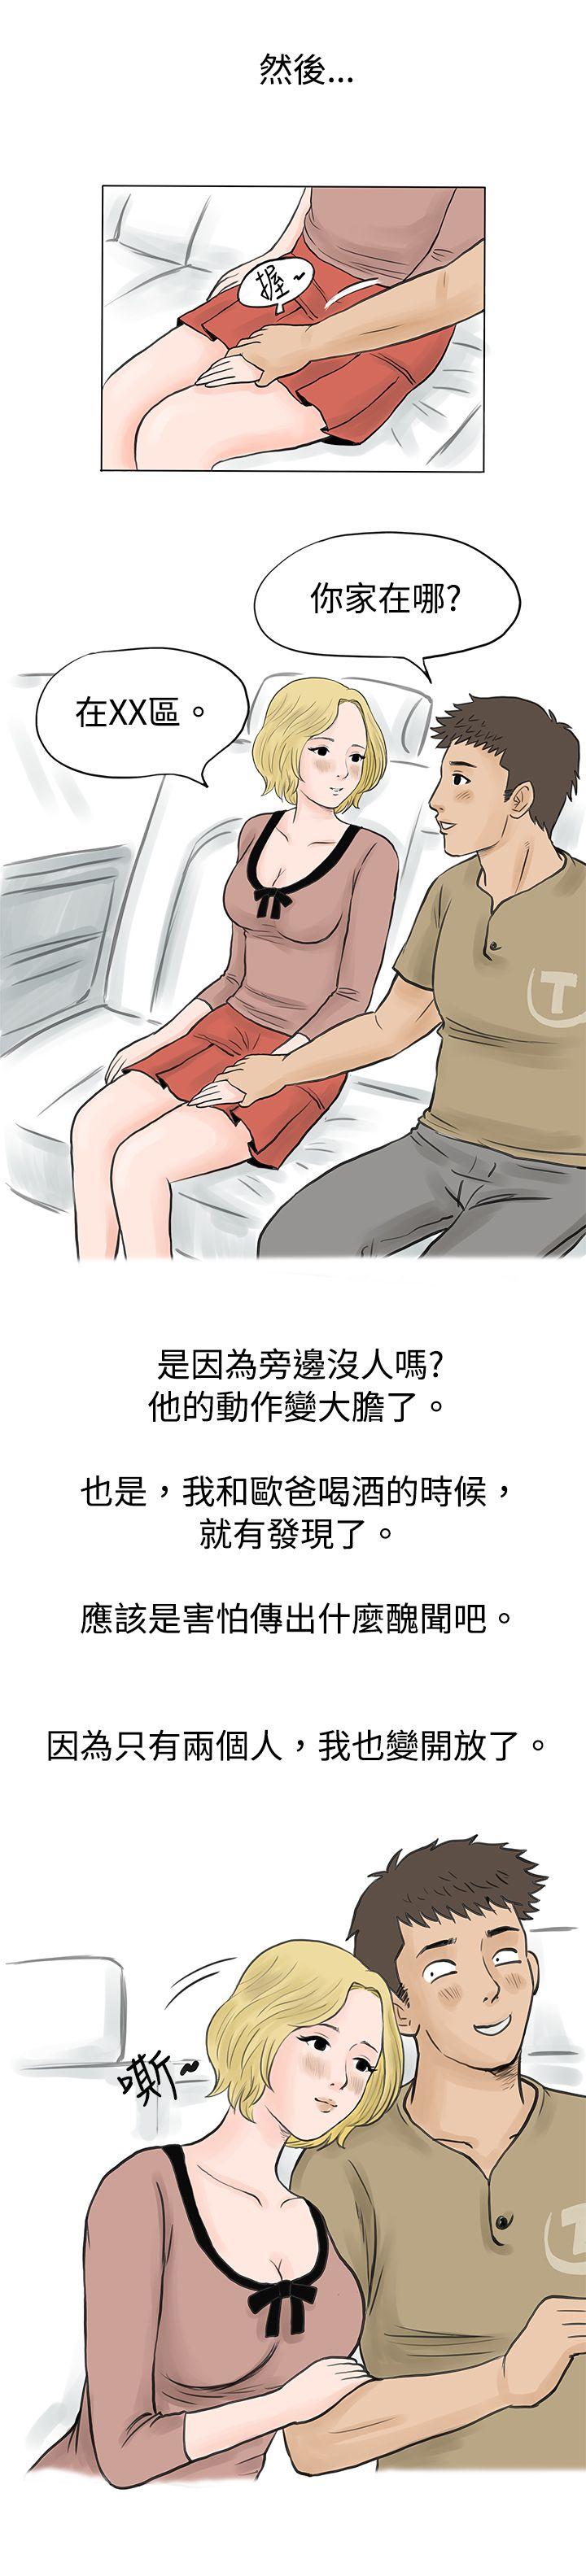 秘密Story  个人秀BJ小故事(下) 漫画图片5.jpg